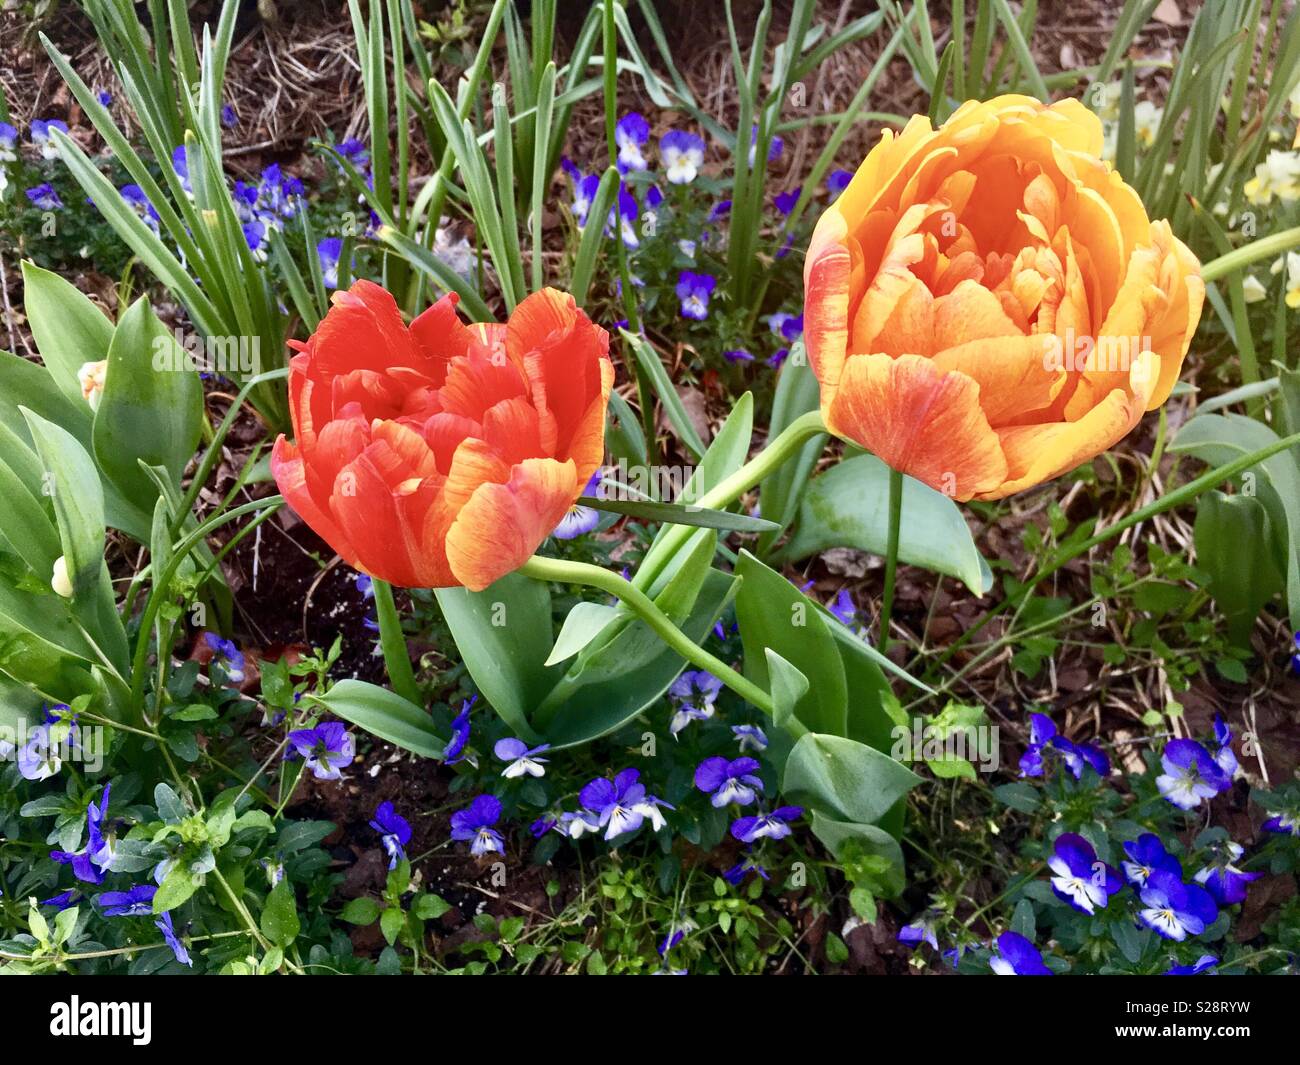 Tulipanes Peony, también conocido como doble tulipanes, creciendo en medio de flores moradas en primavera. Foto de stock